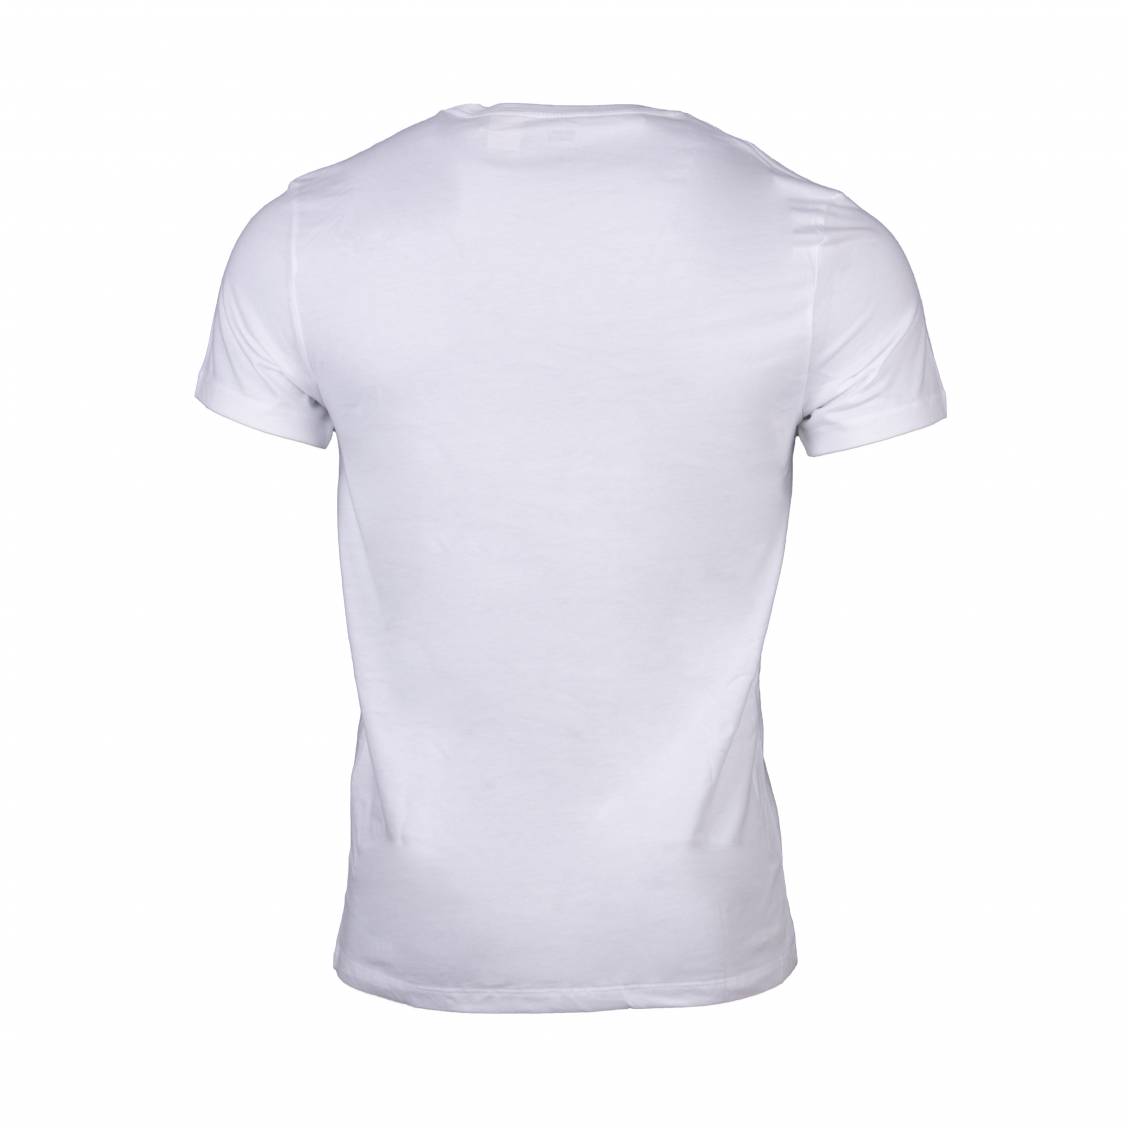 LEVI'S Lot de 2 T-Shirts Blanc/Gris Homme